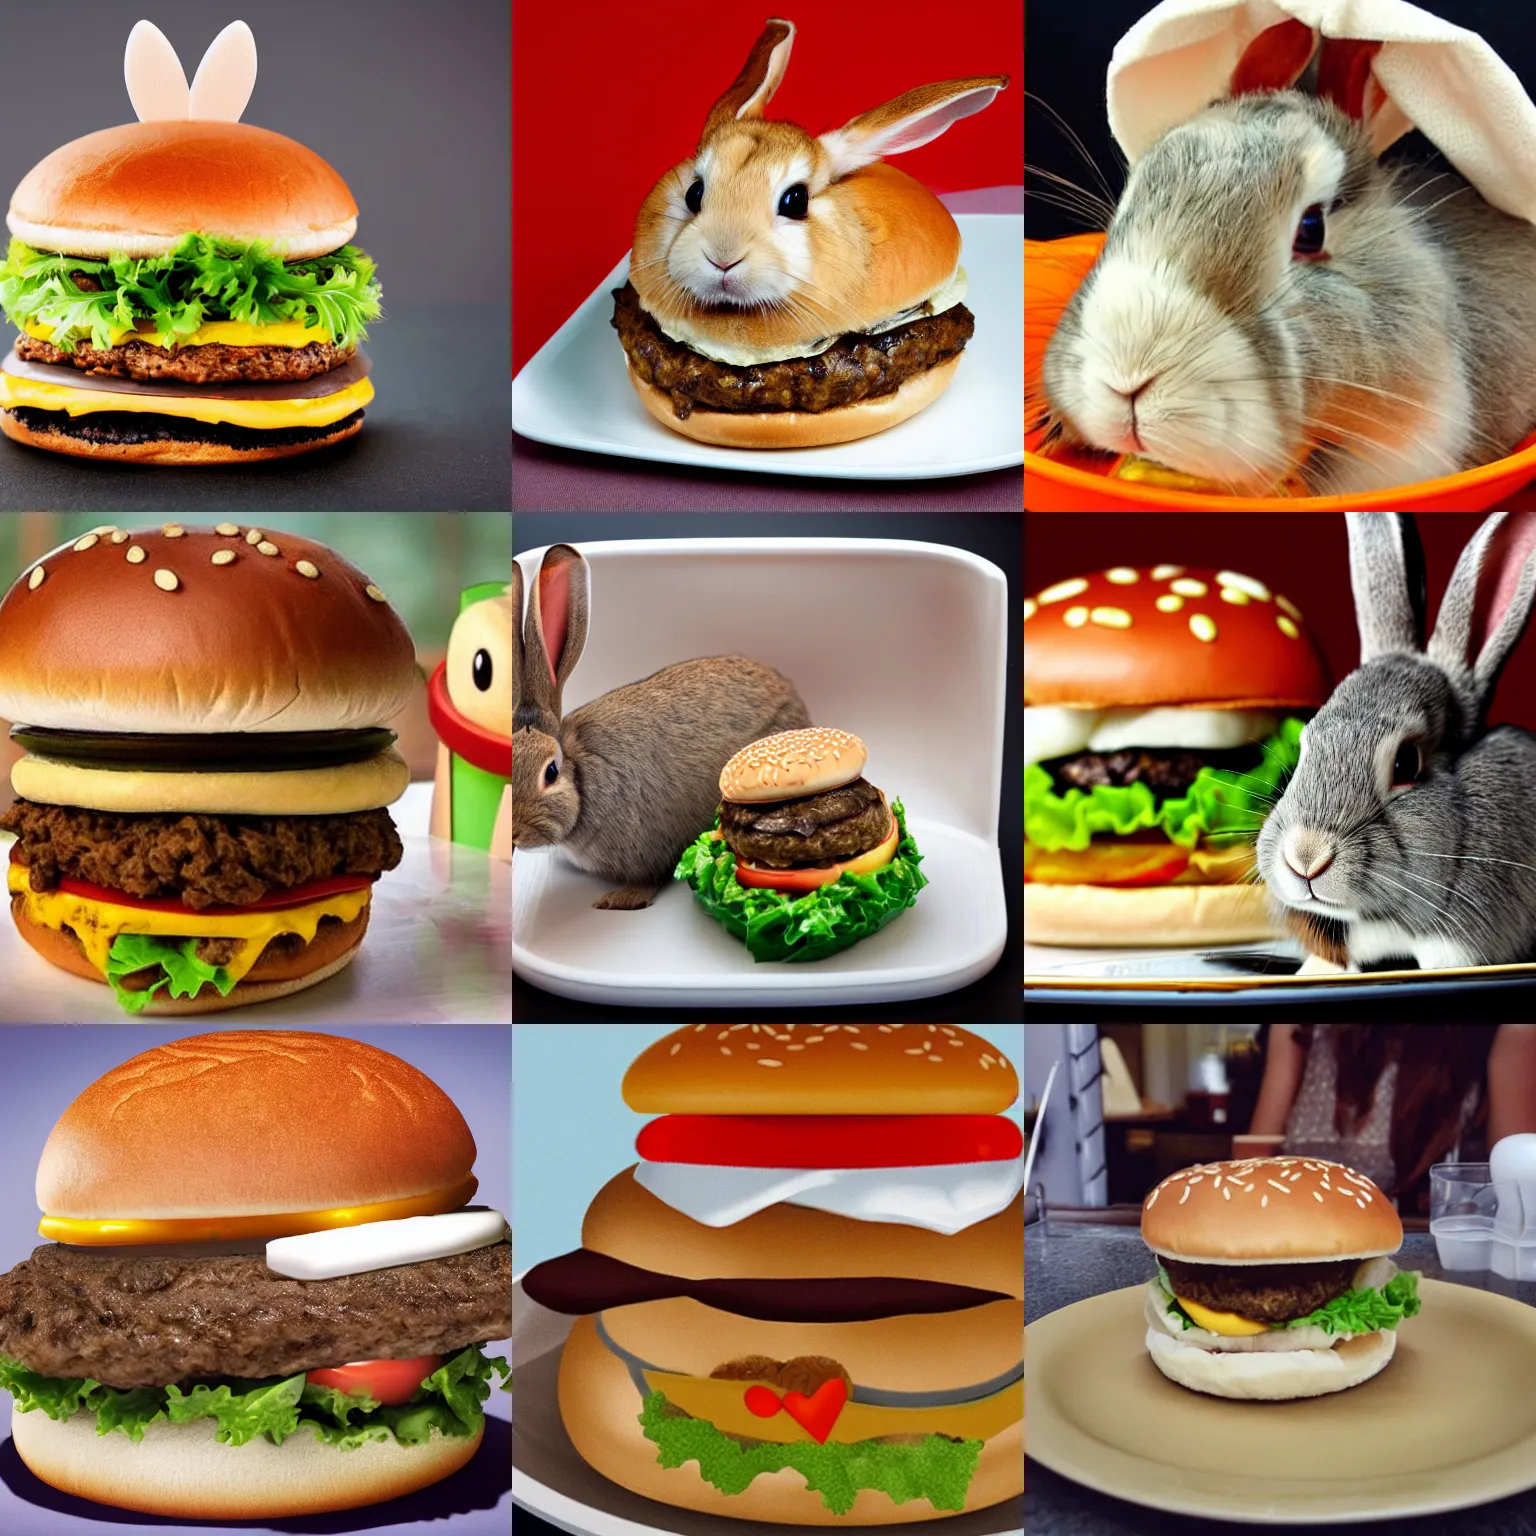 Prompt: a rabbit inside a hamburger